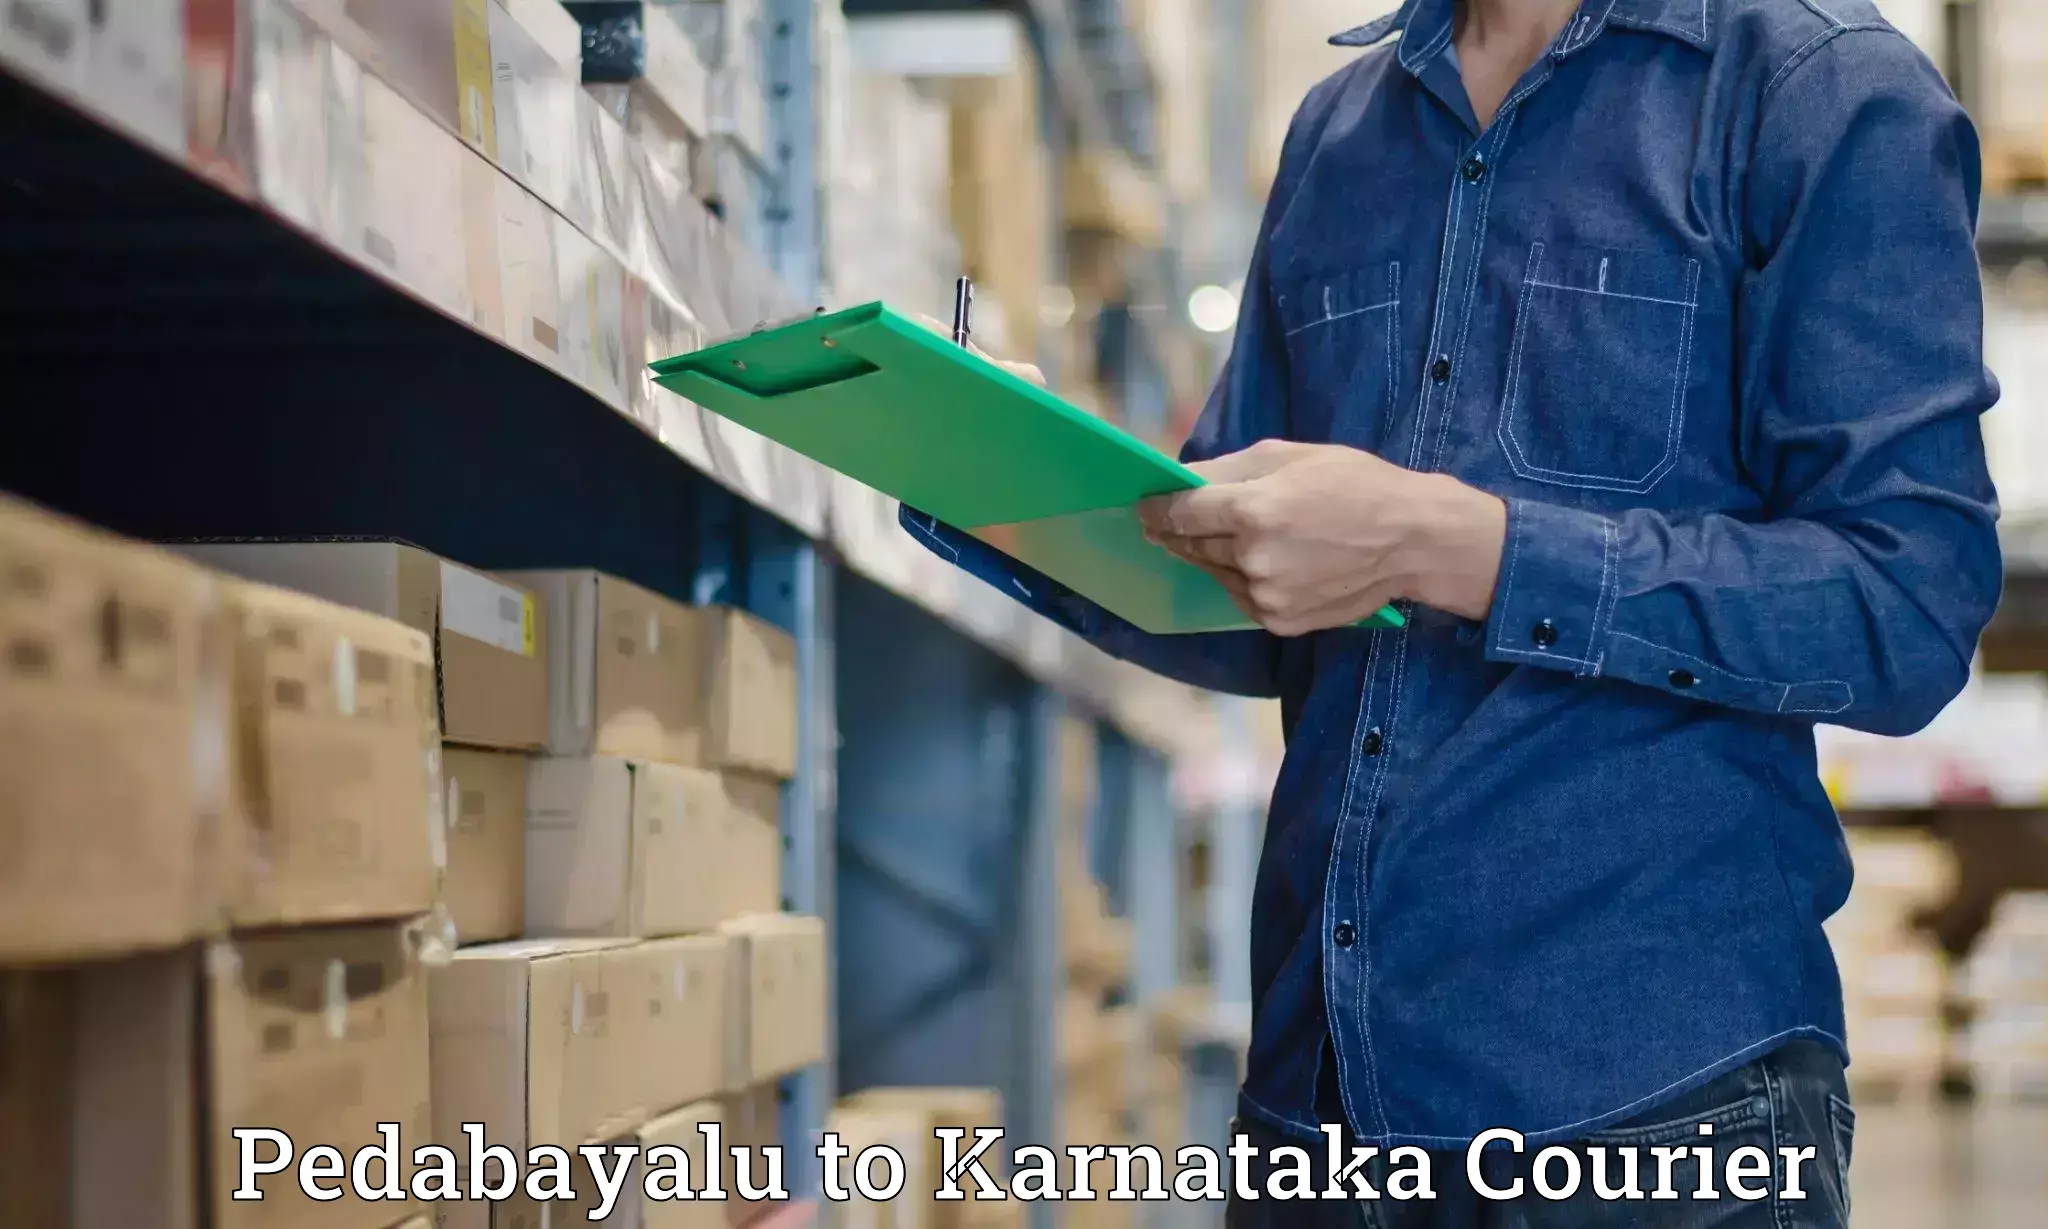 User-friendly delivery service Pedabayalu to Gurmatkal